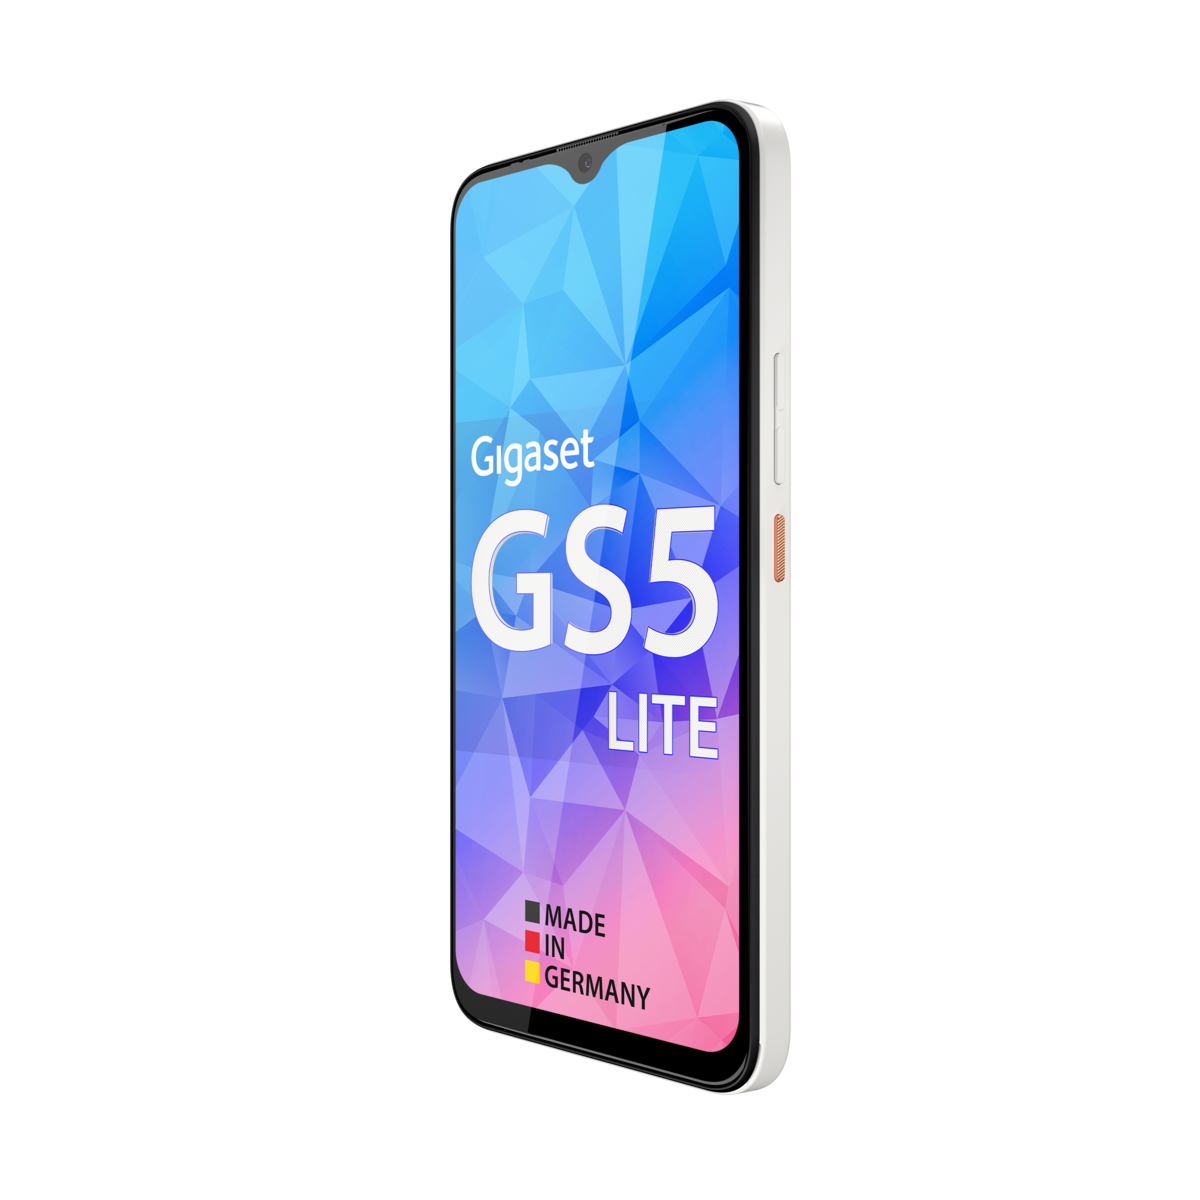 GS5 LITE GIGASET GB White SIM 64 Pearl Dual